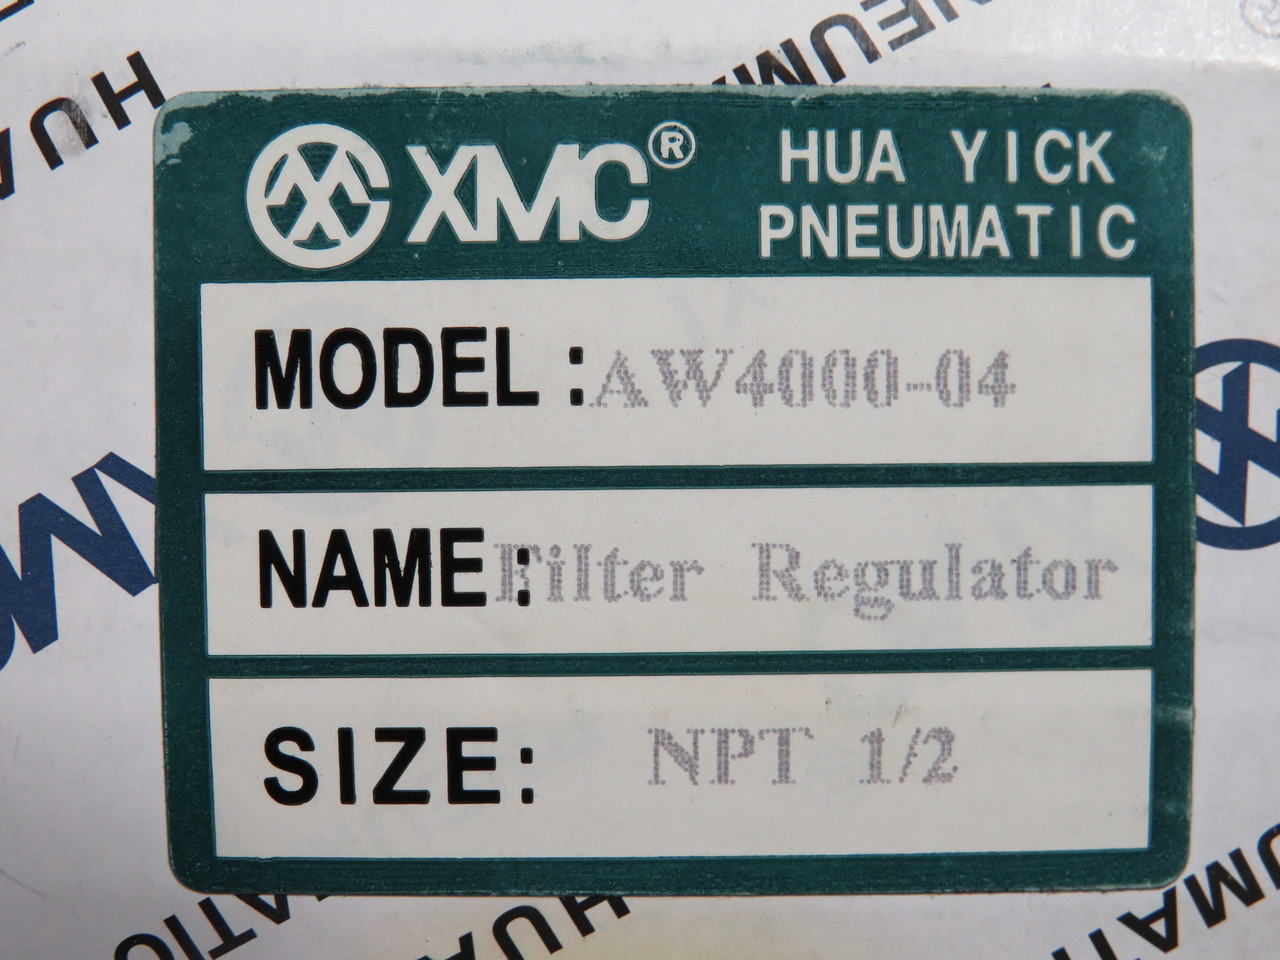 XMC AW4000-04 Filter Regulator 1/2" NPT 0.05-0.85MPa SHELF WEAR NEW